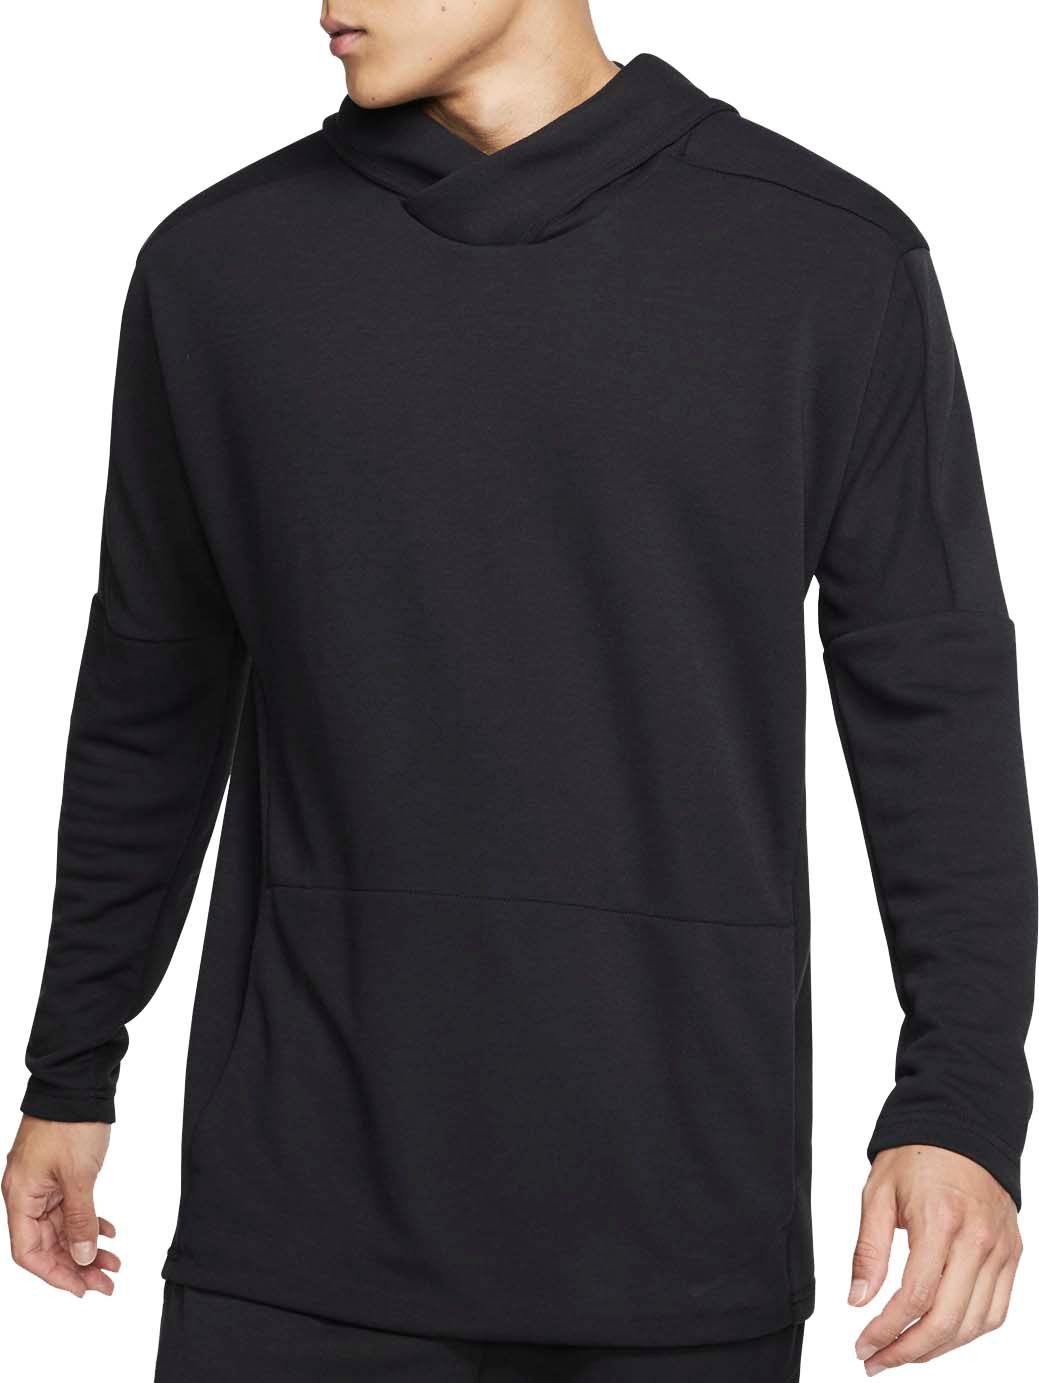 Men's Hoodies & Men's Sweatshirts | Best Price Guarantee at DICK'S